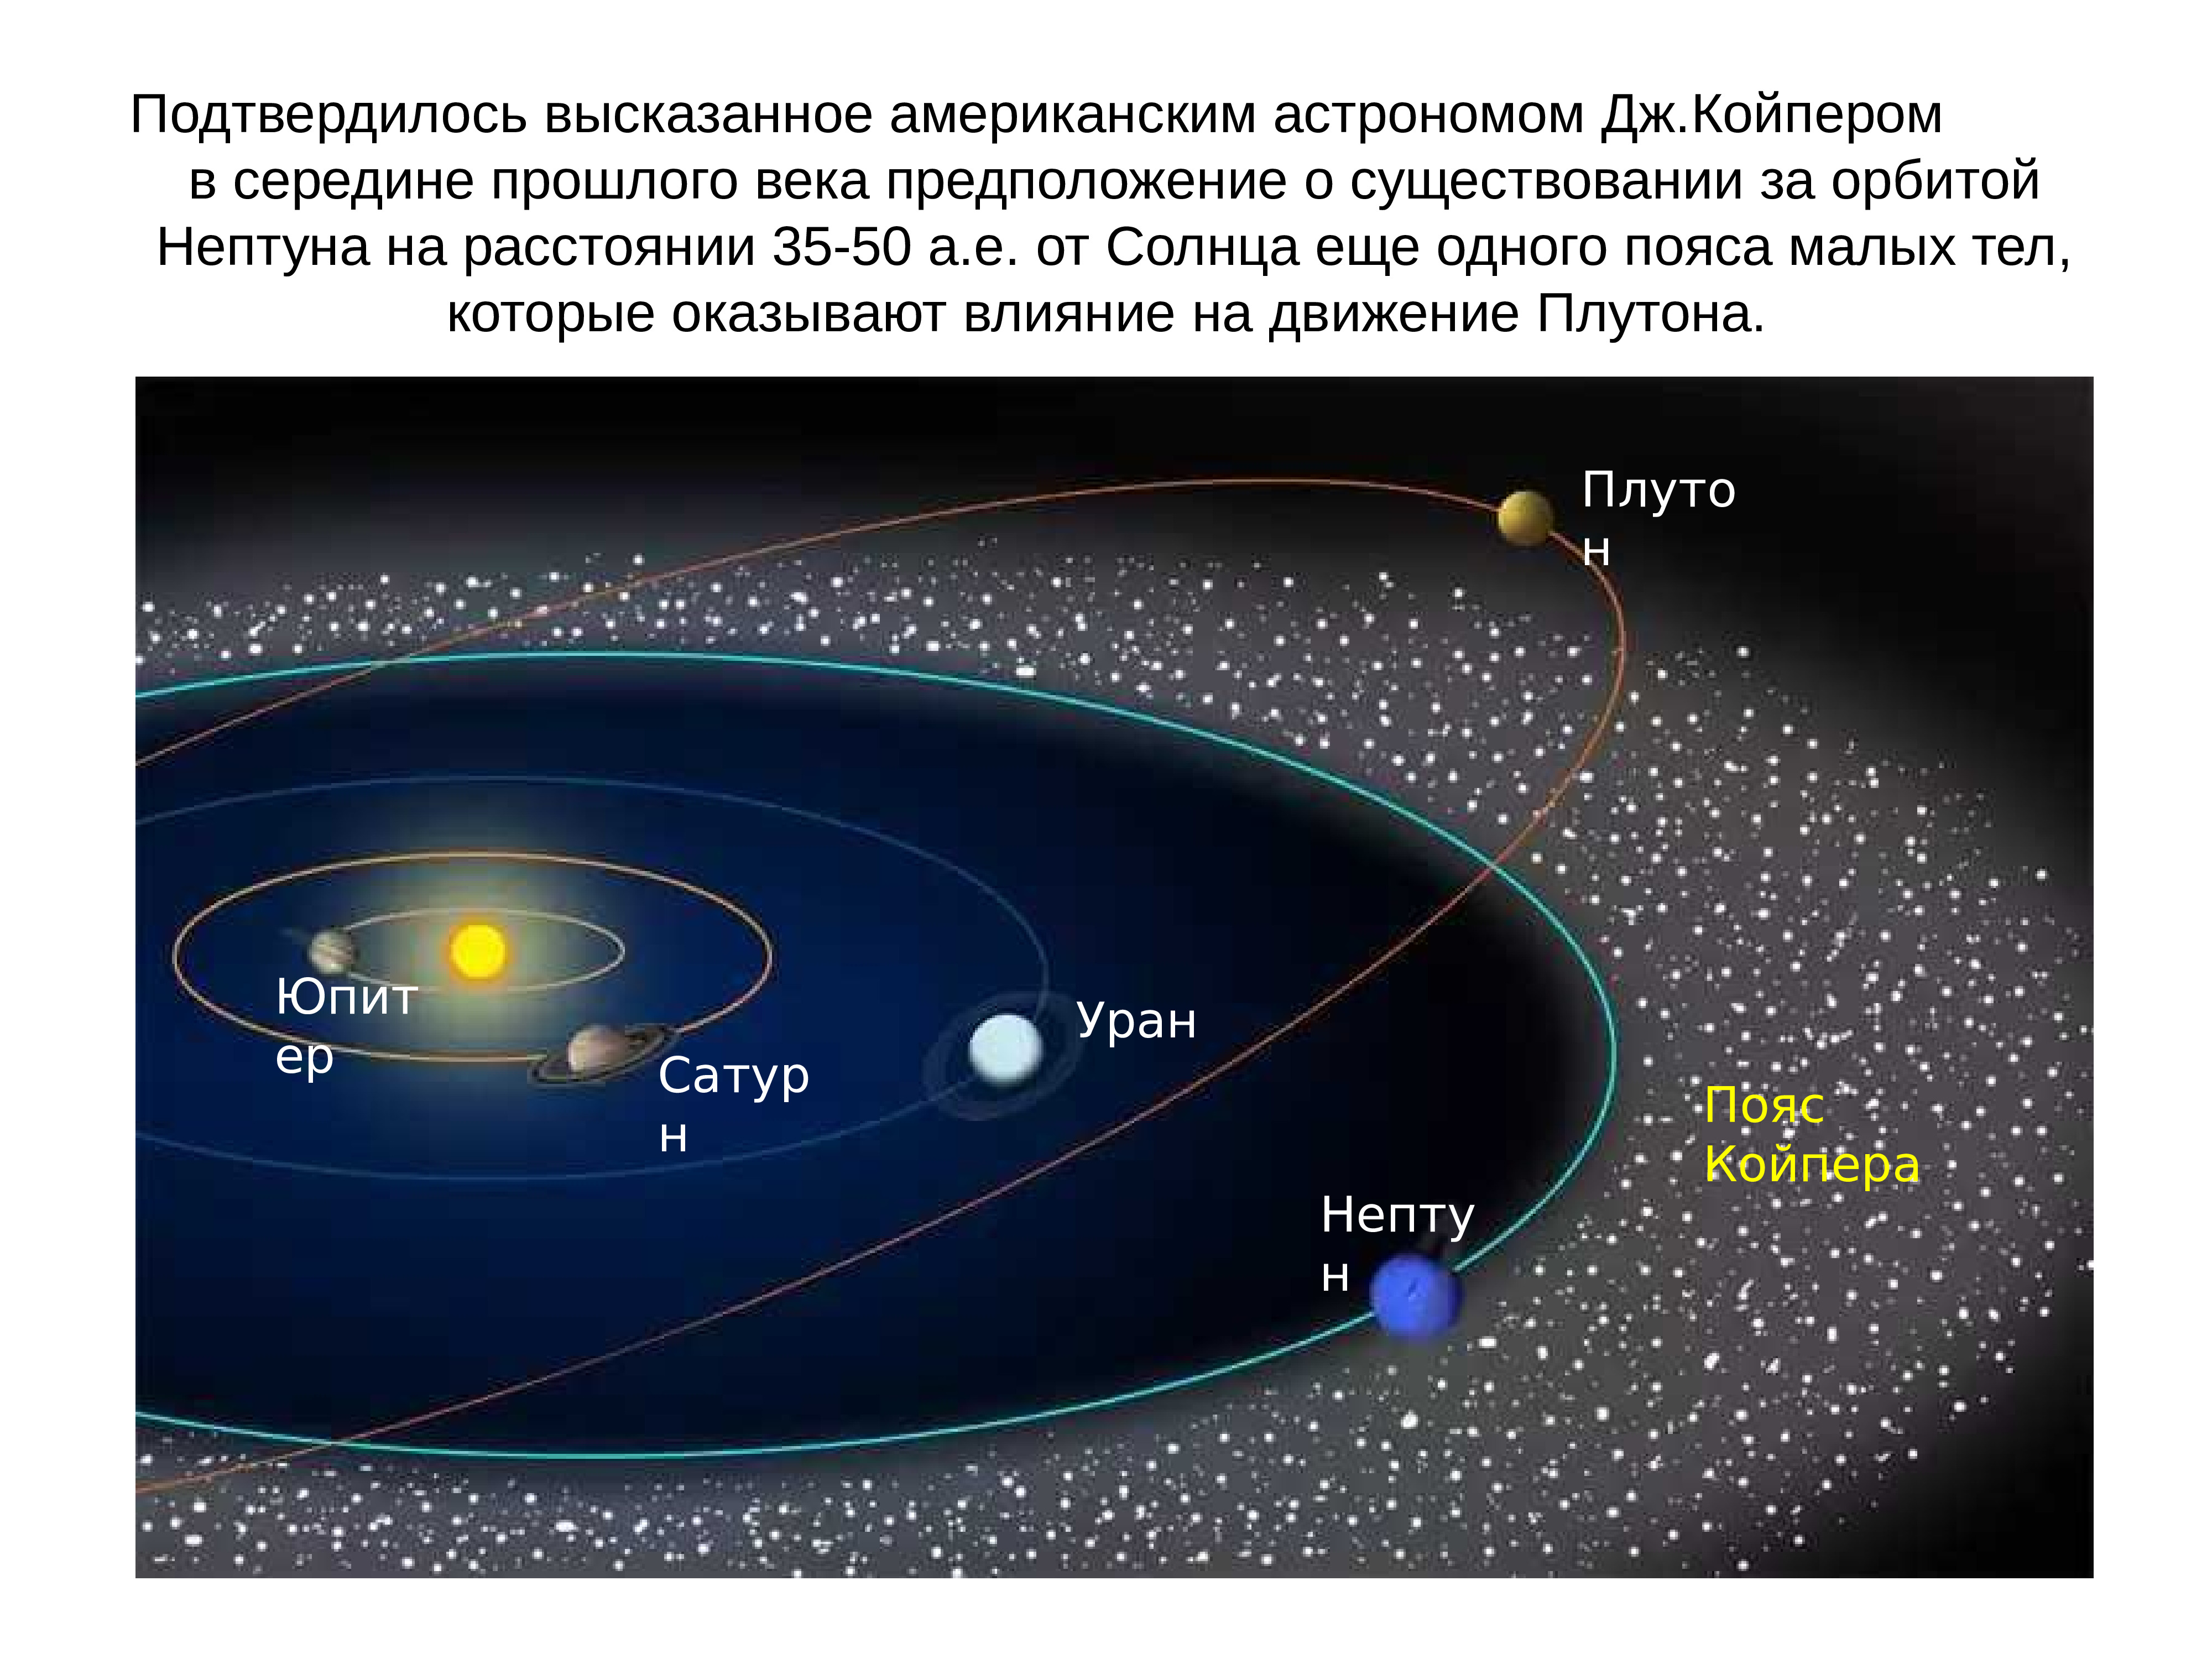 Малое тело солнечной системы 9. Солнечная система пояс Койпера Оорта. Малые тела солнечной системы пояс Койпера. Карликовые планеты пояса Койпера. Пояс астероидов и пояс Койпера в солнечной системе.